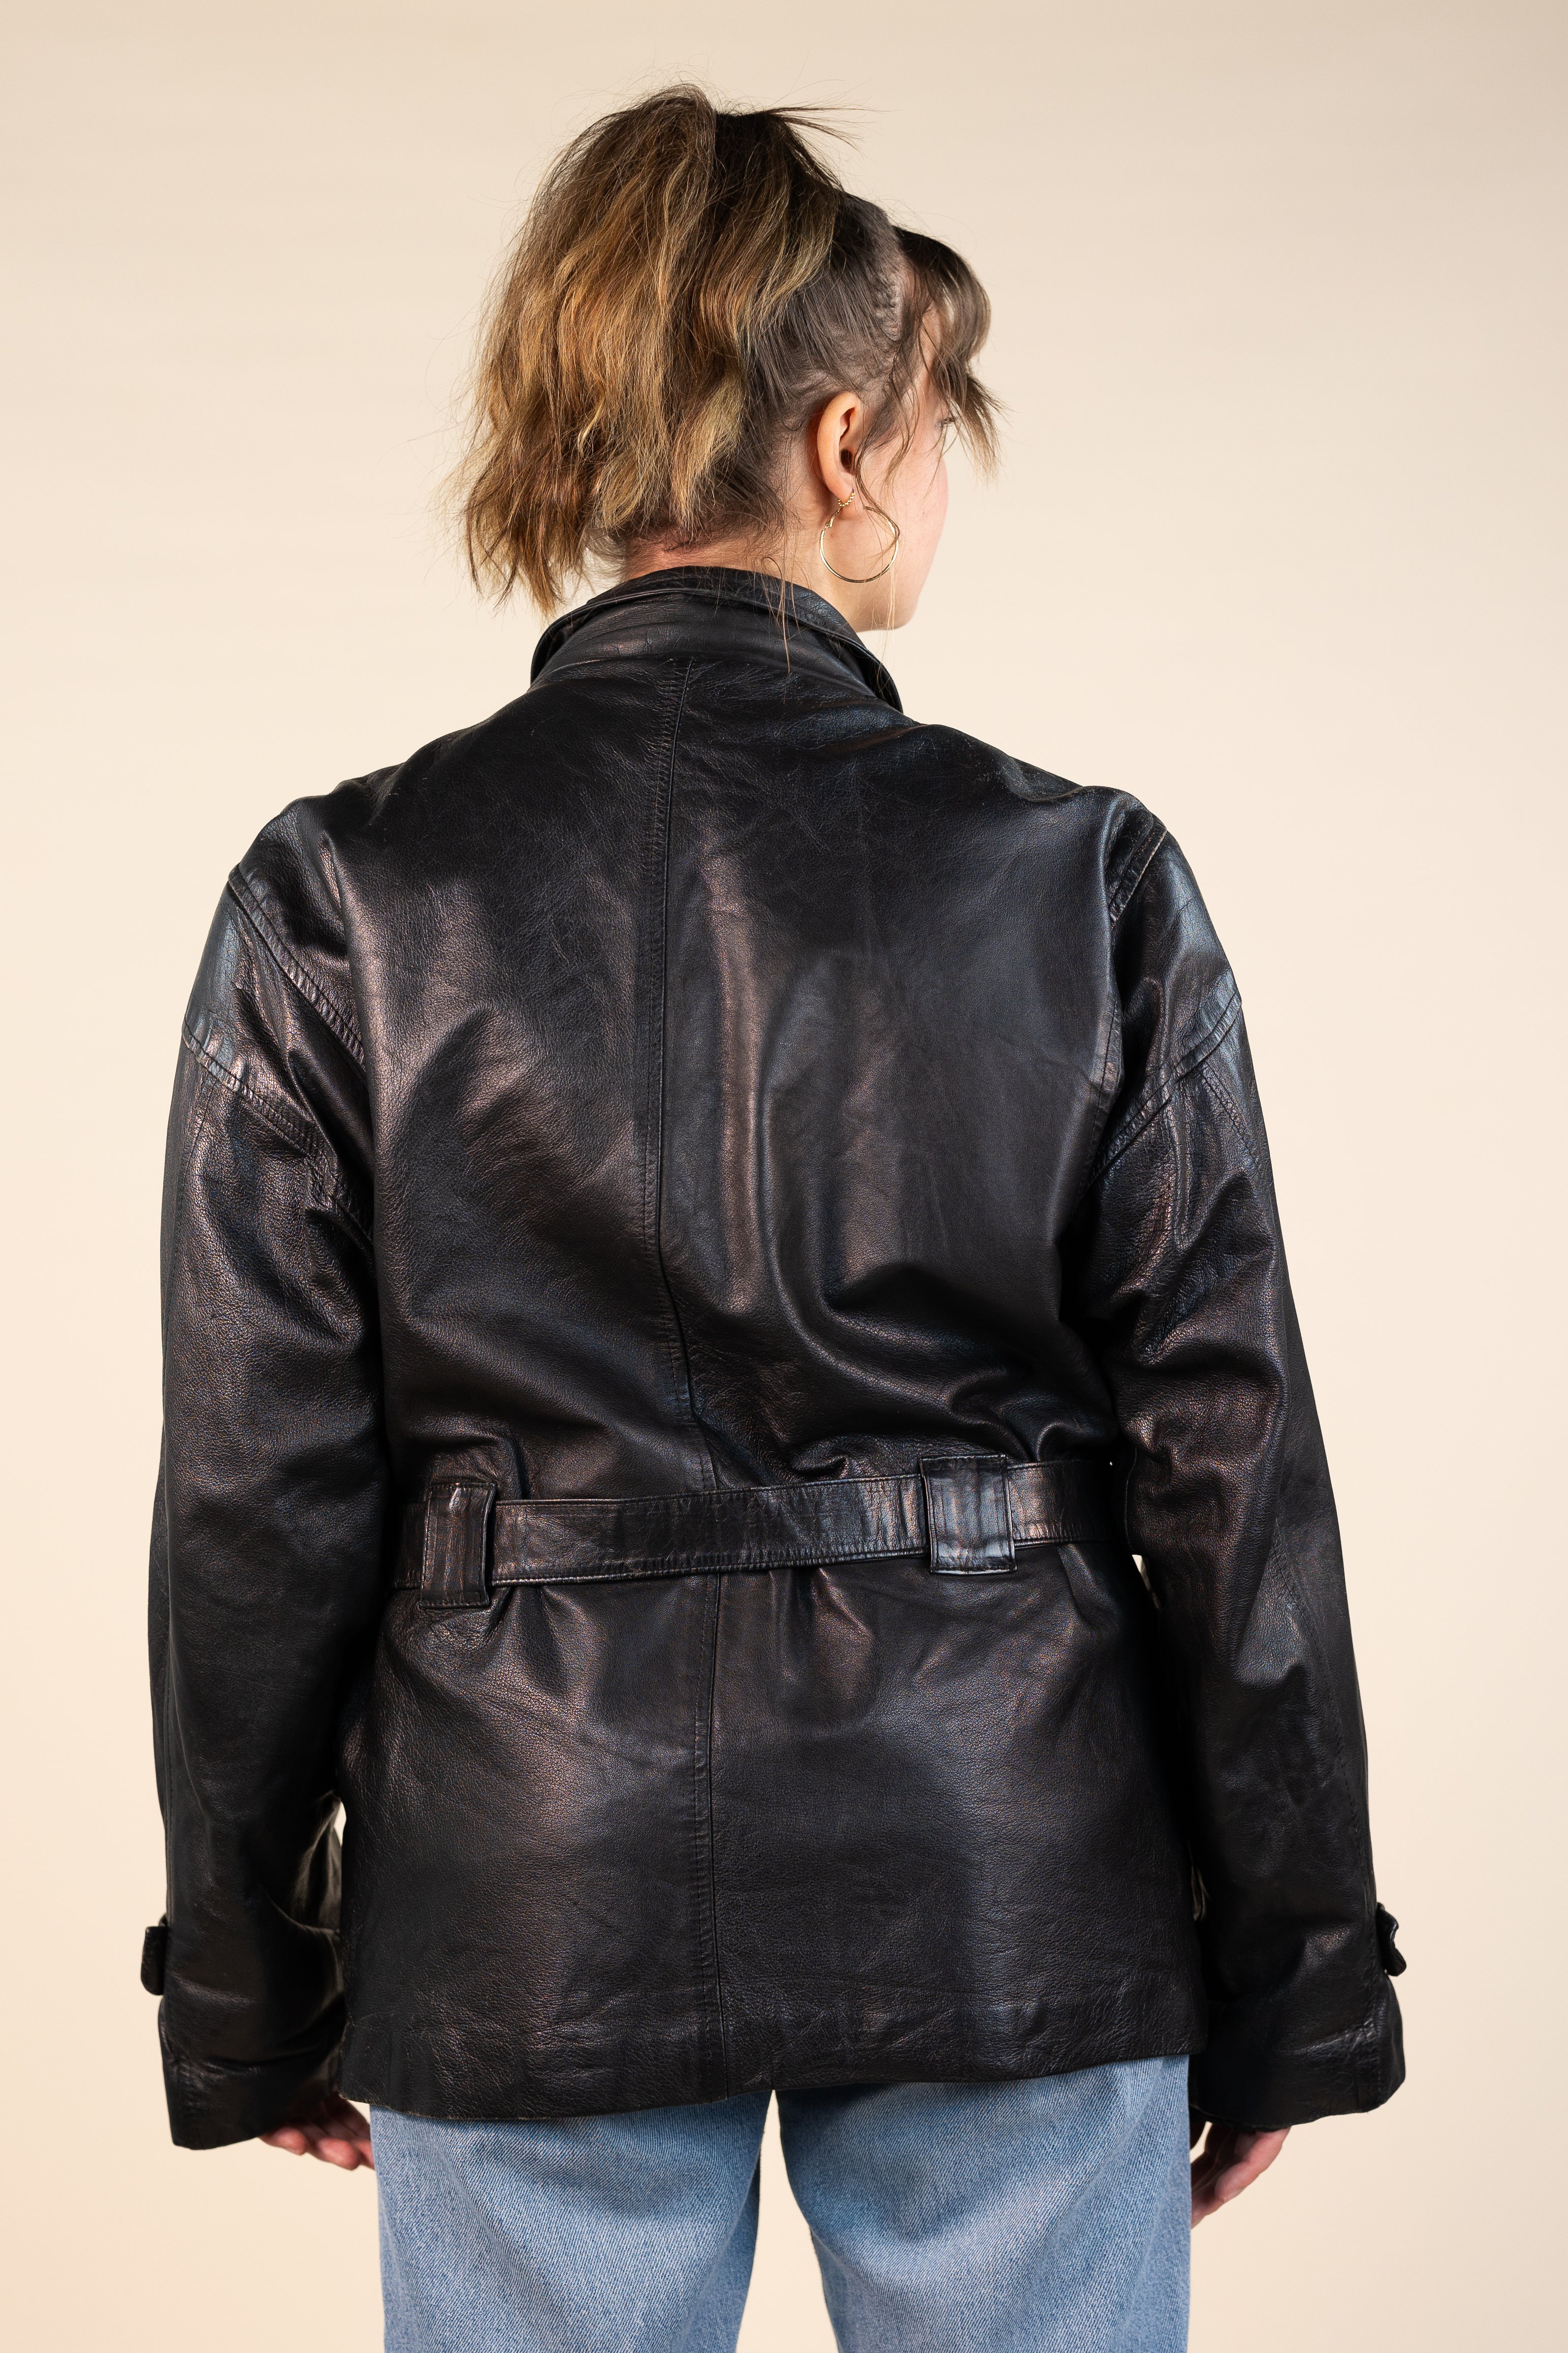 90s Leather Jacket